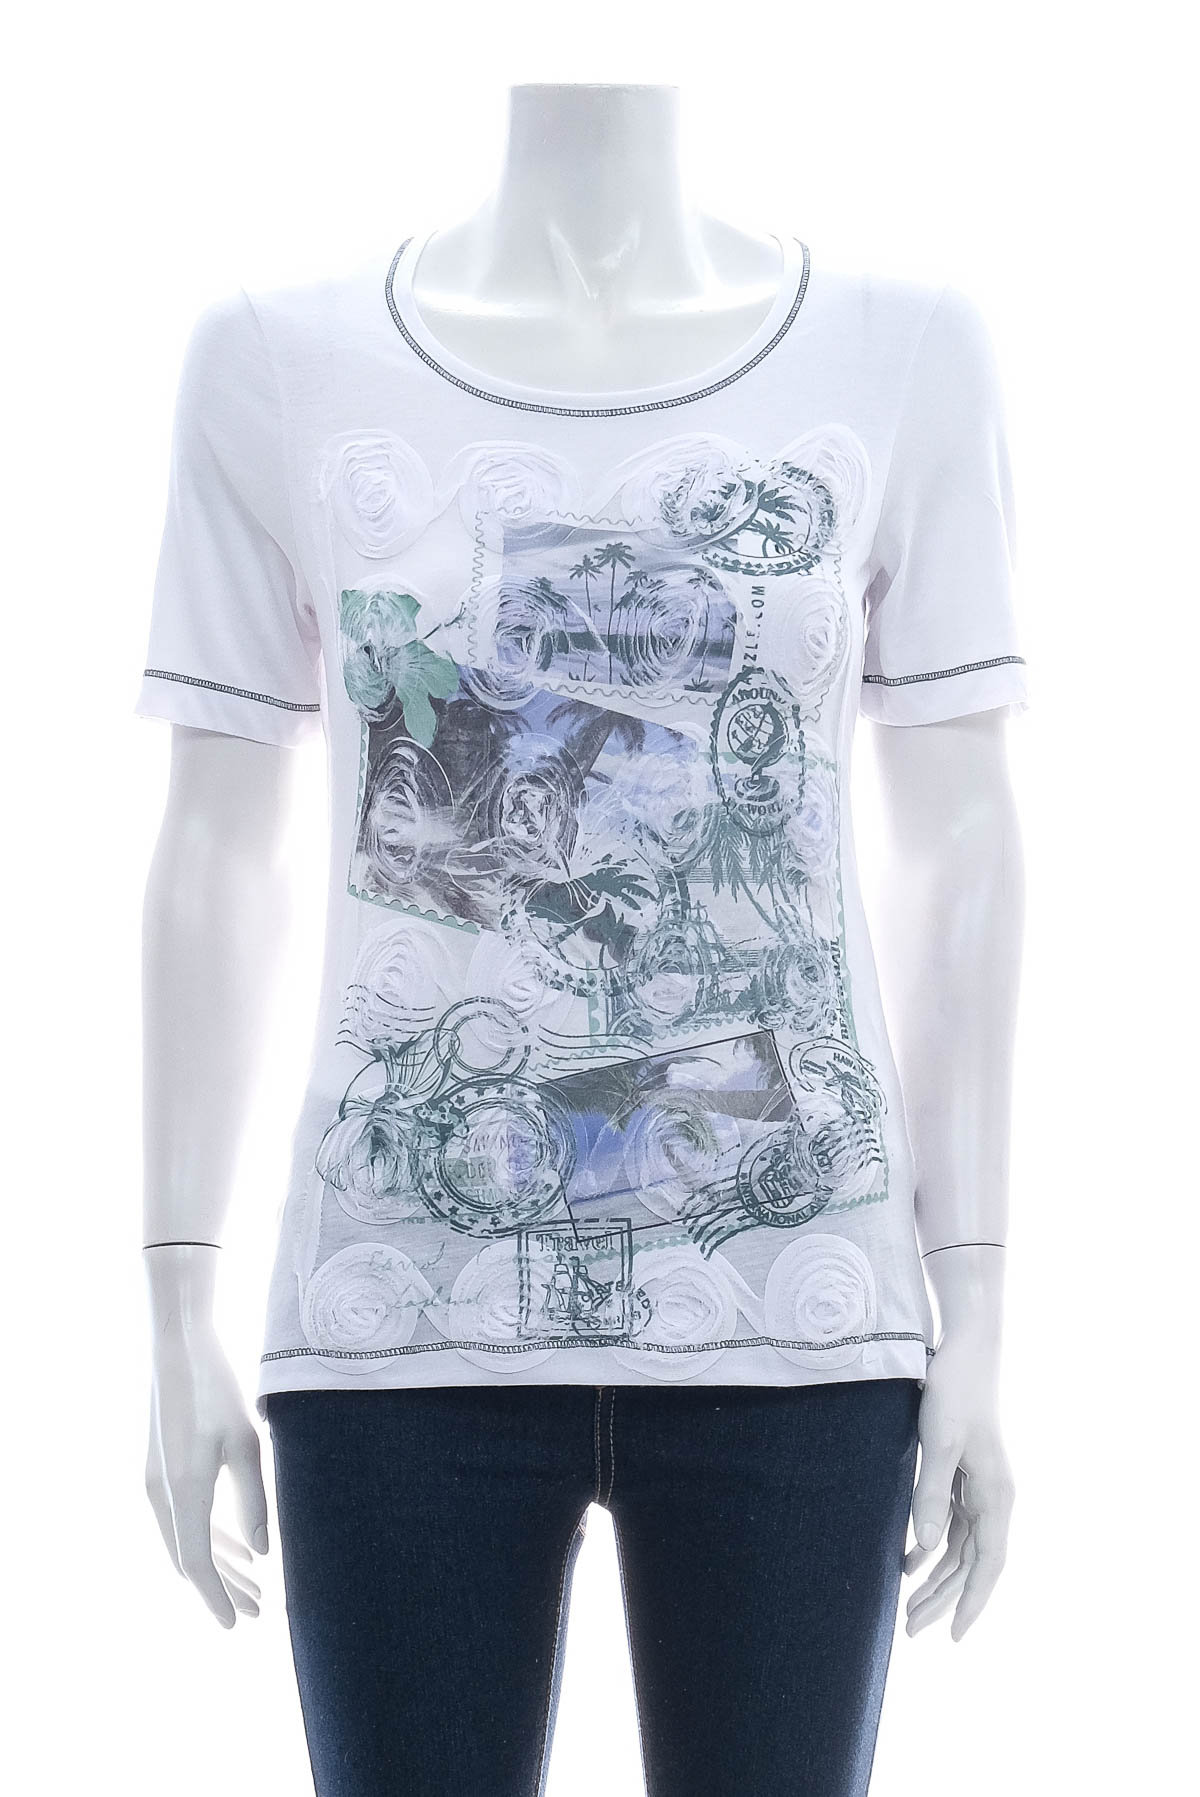 Women's t-shirt - Claude Arielle - 0